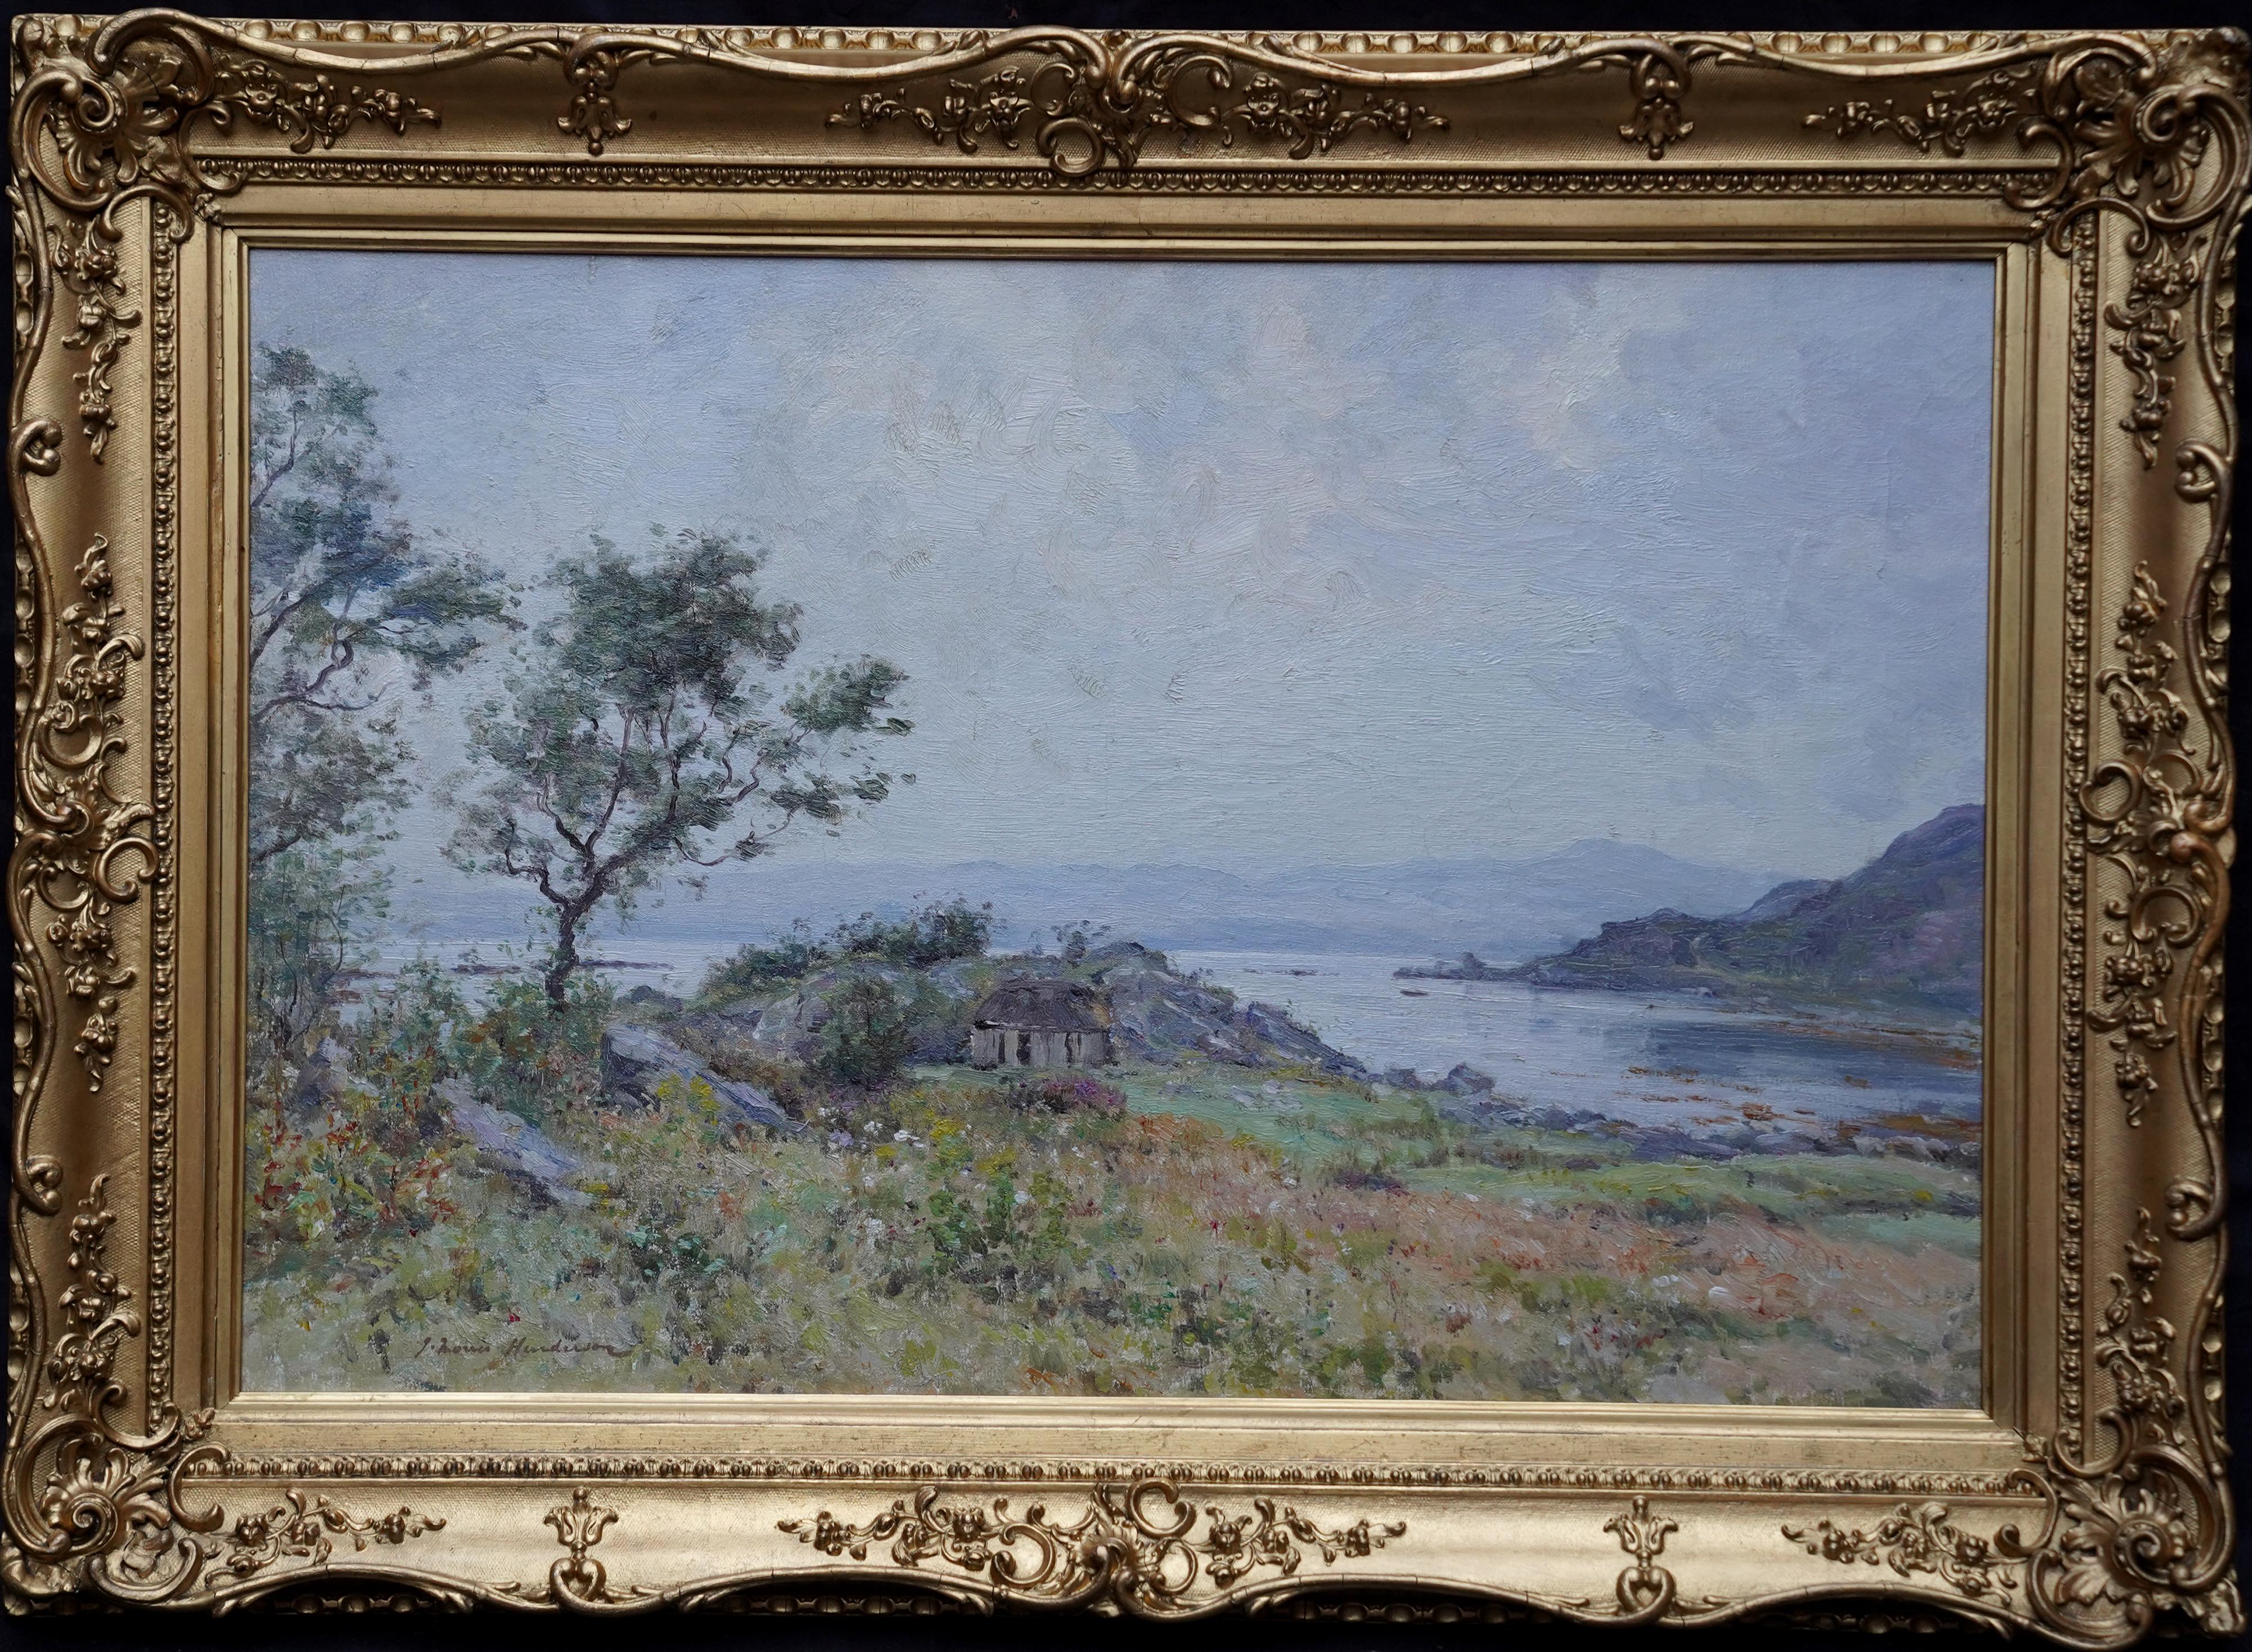 Landscape Painting Joseph Morris Henderson - Peinture à l'huile impressionniste victorienne de paysage du Perthshire avec vue sur la côte écossaise 